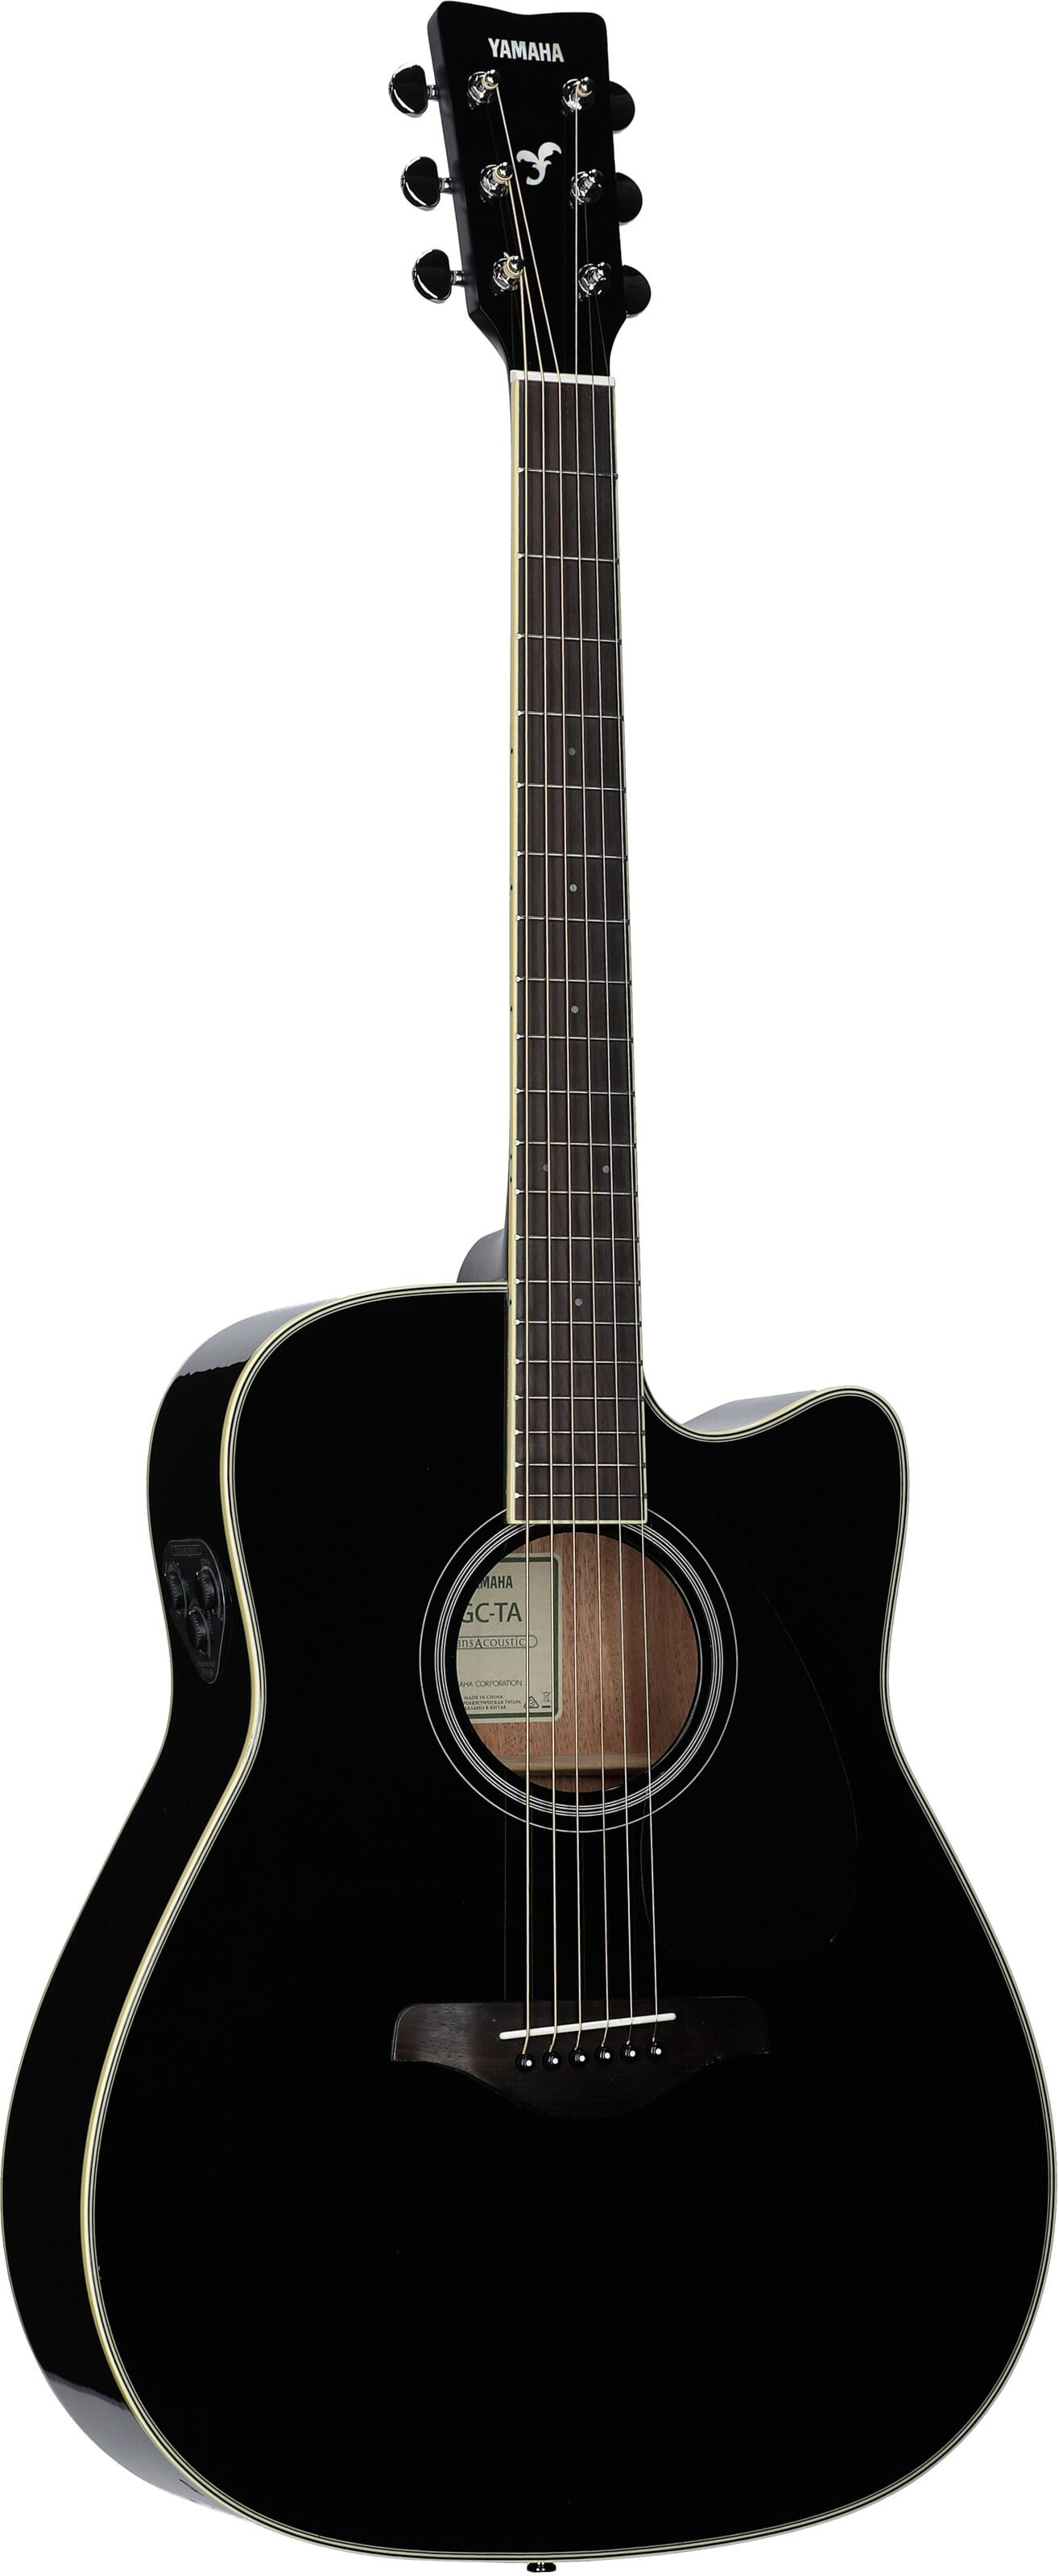 Yamaha FGC-TA Cutaway TransAcoustic Guitar